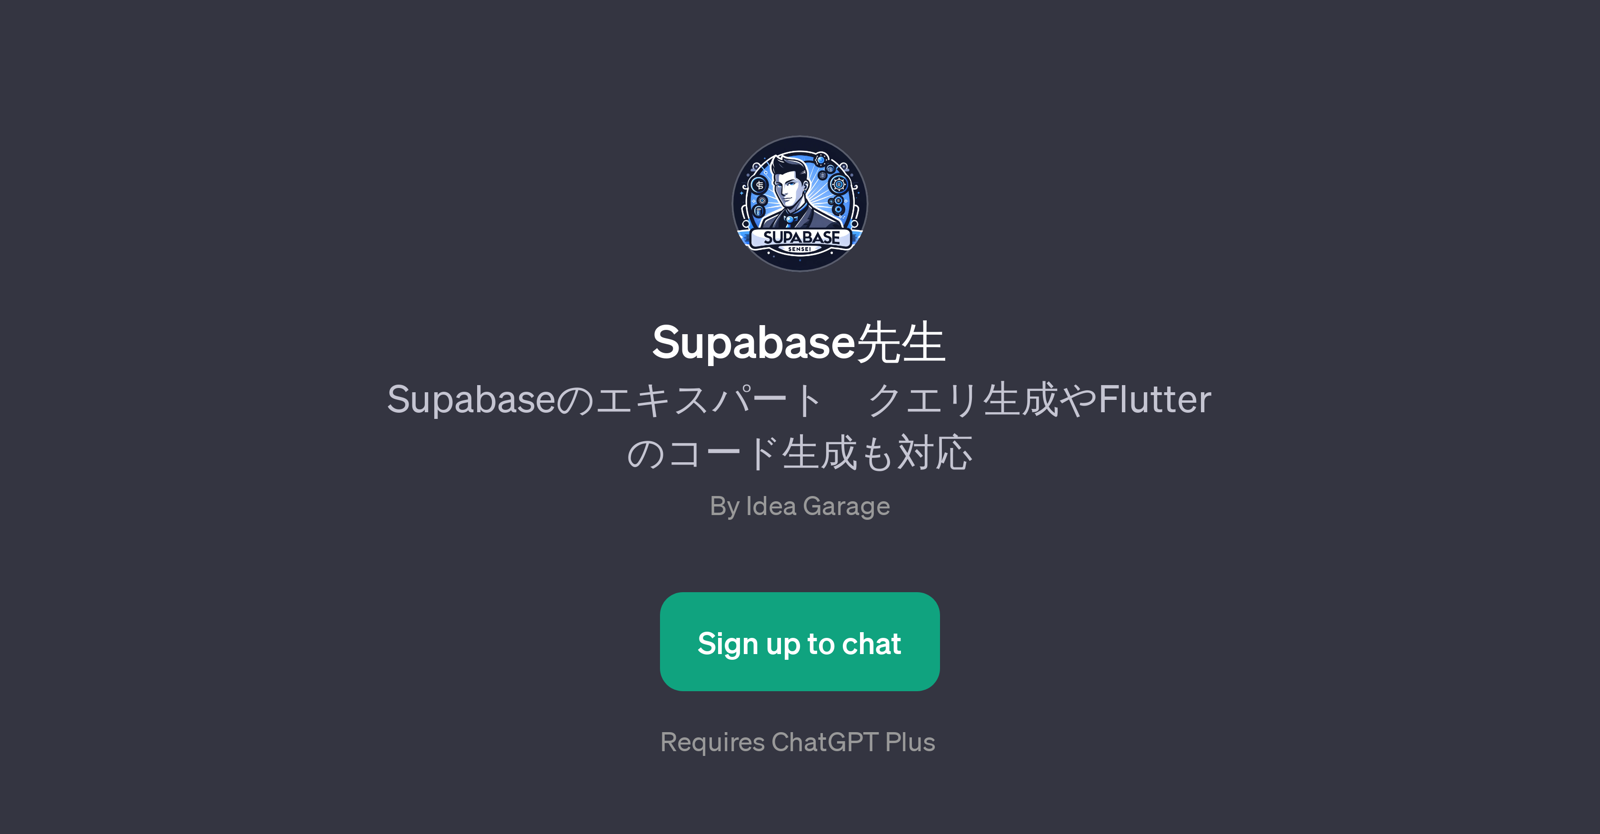 Supabase website